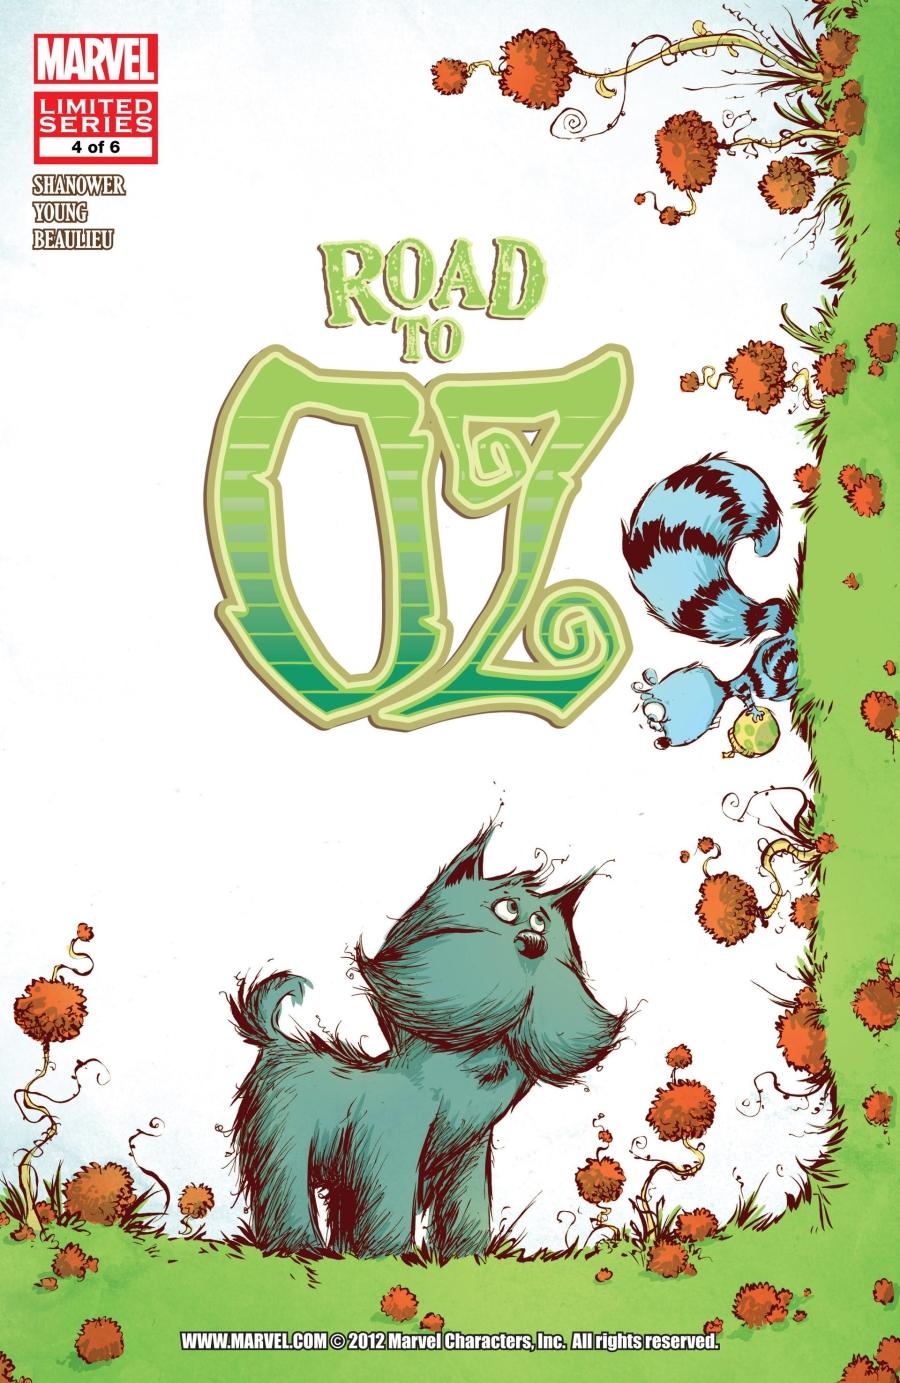 Road to Oz Vol. 1 #4